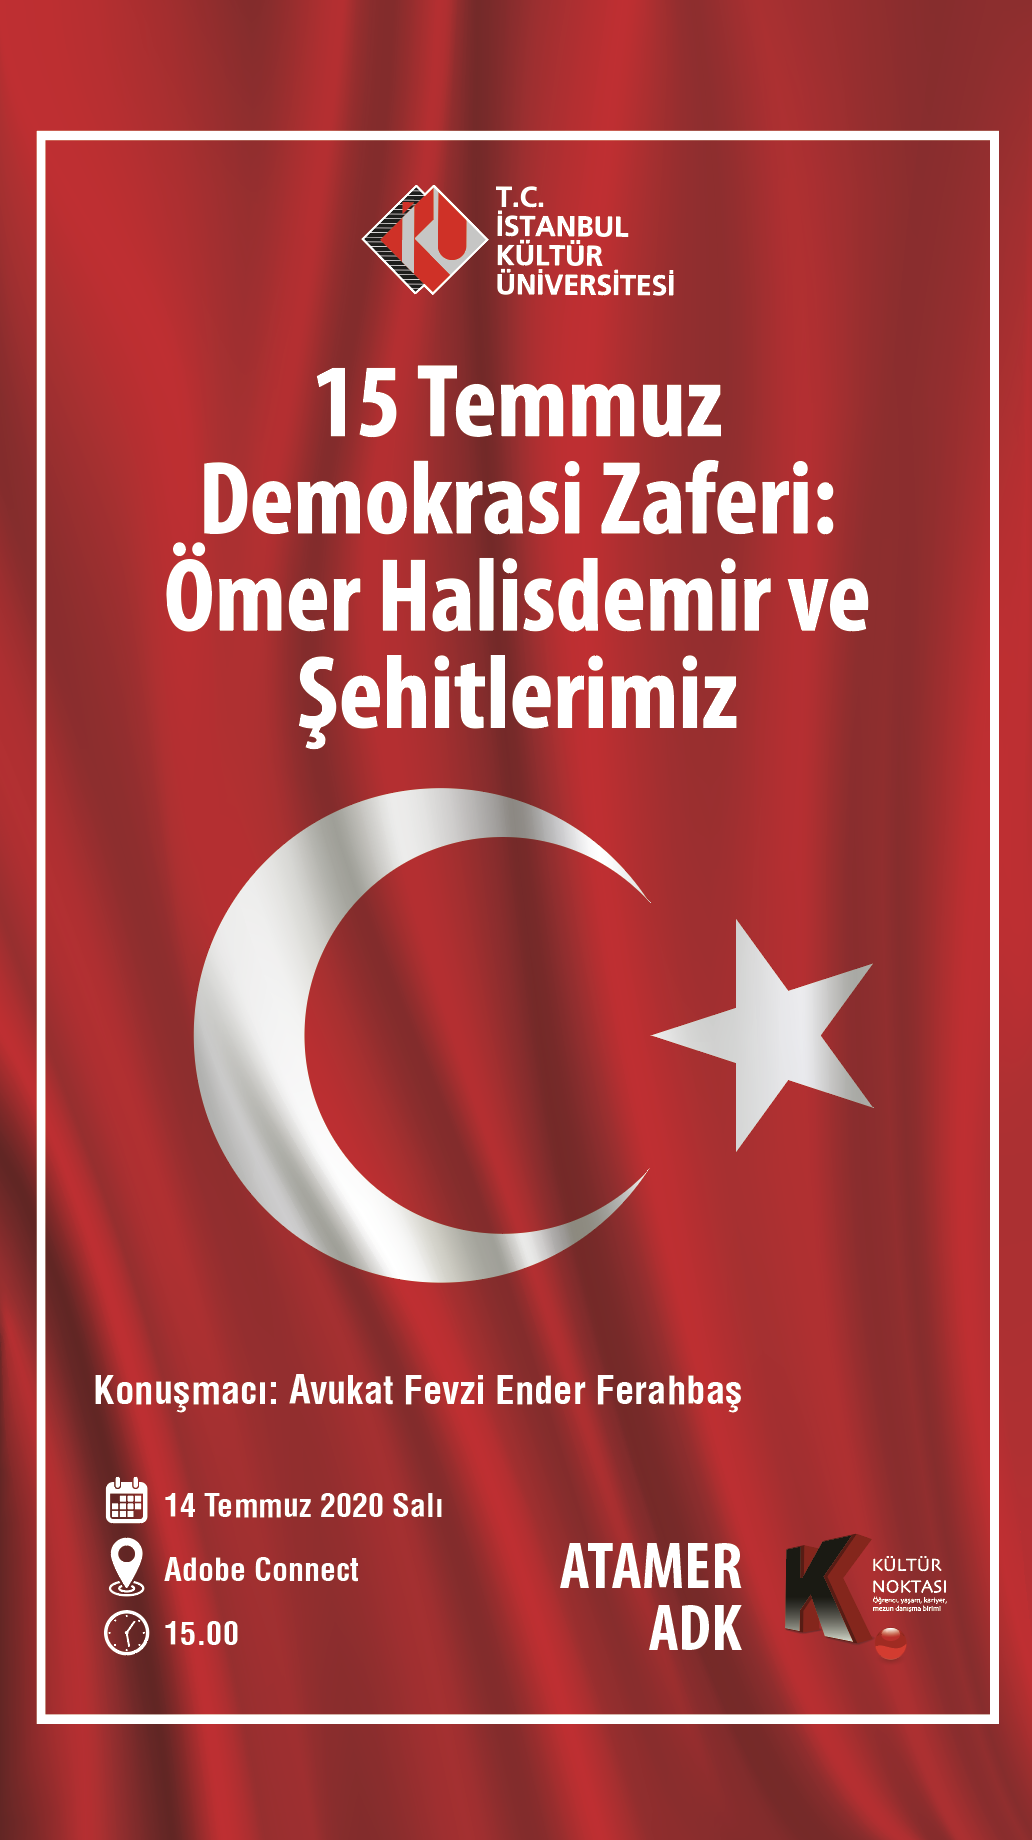 “15 Temmuz Demokrasi Zaferi: Ömer Halis Demir ve Şehitlerimiz” Webinarı